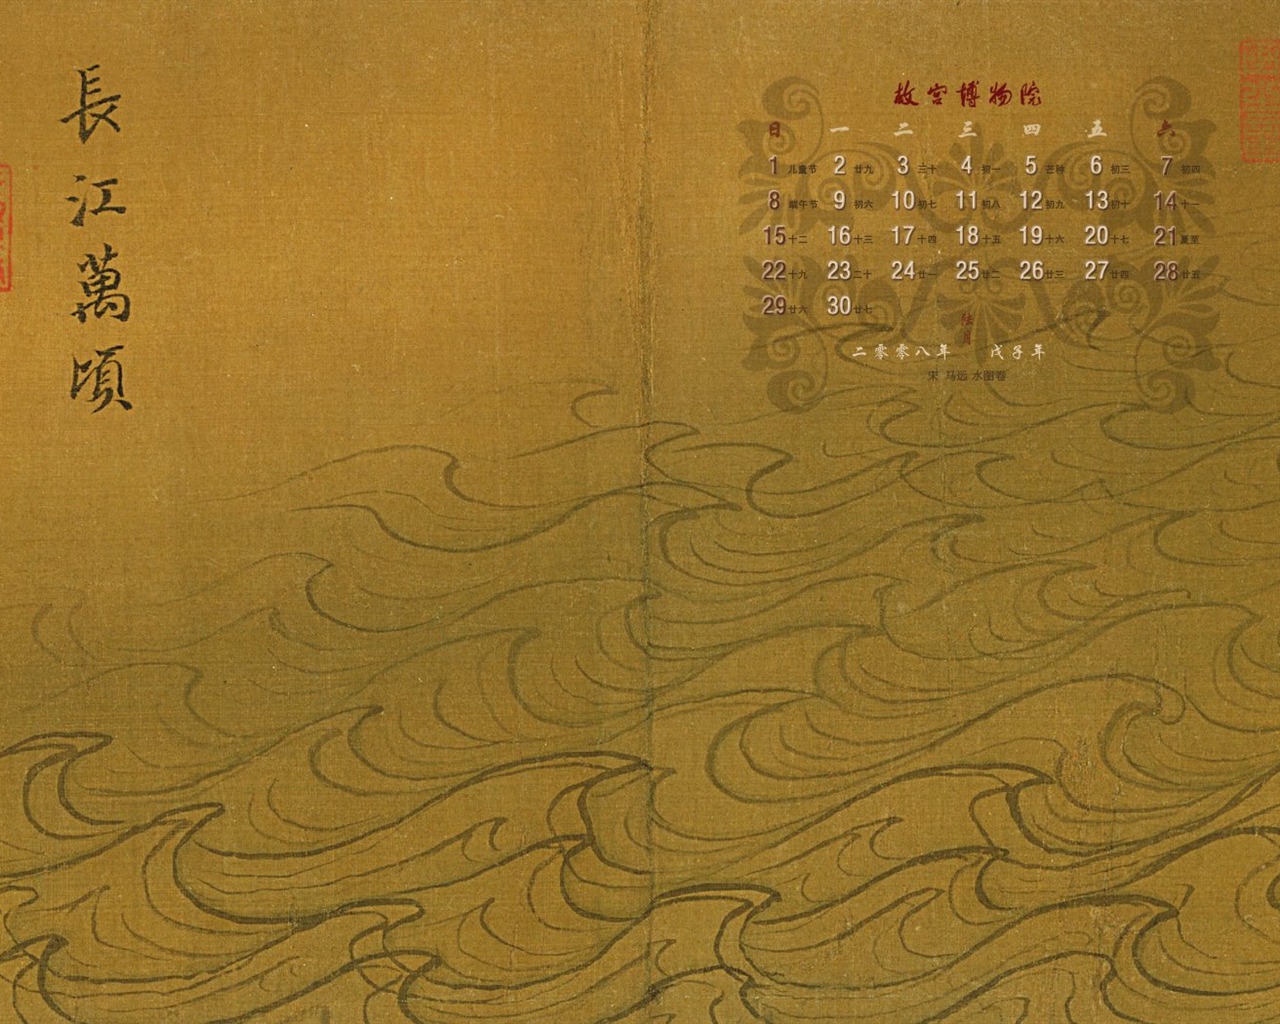 北京故宫博物院 文物展壁纸(二)13 - 1280x1024